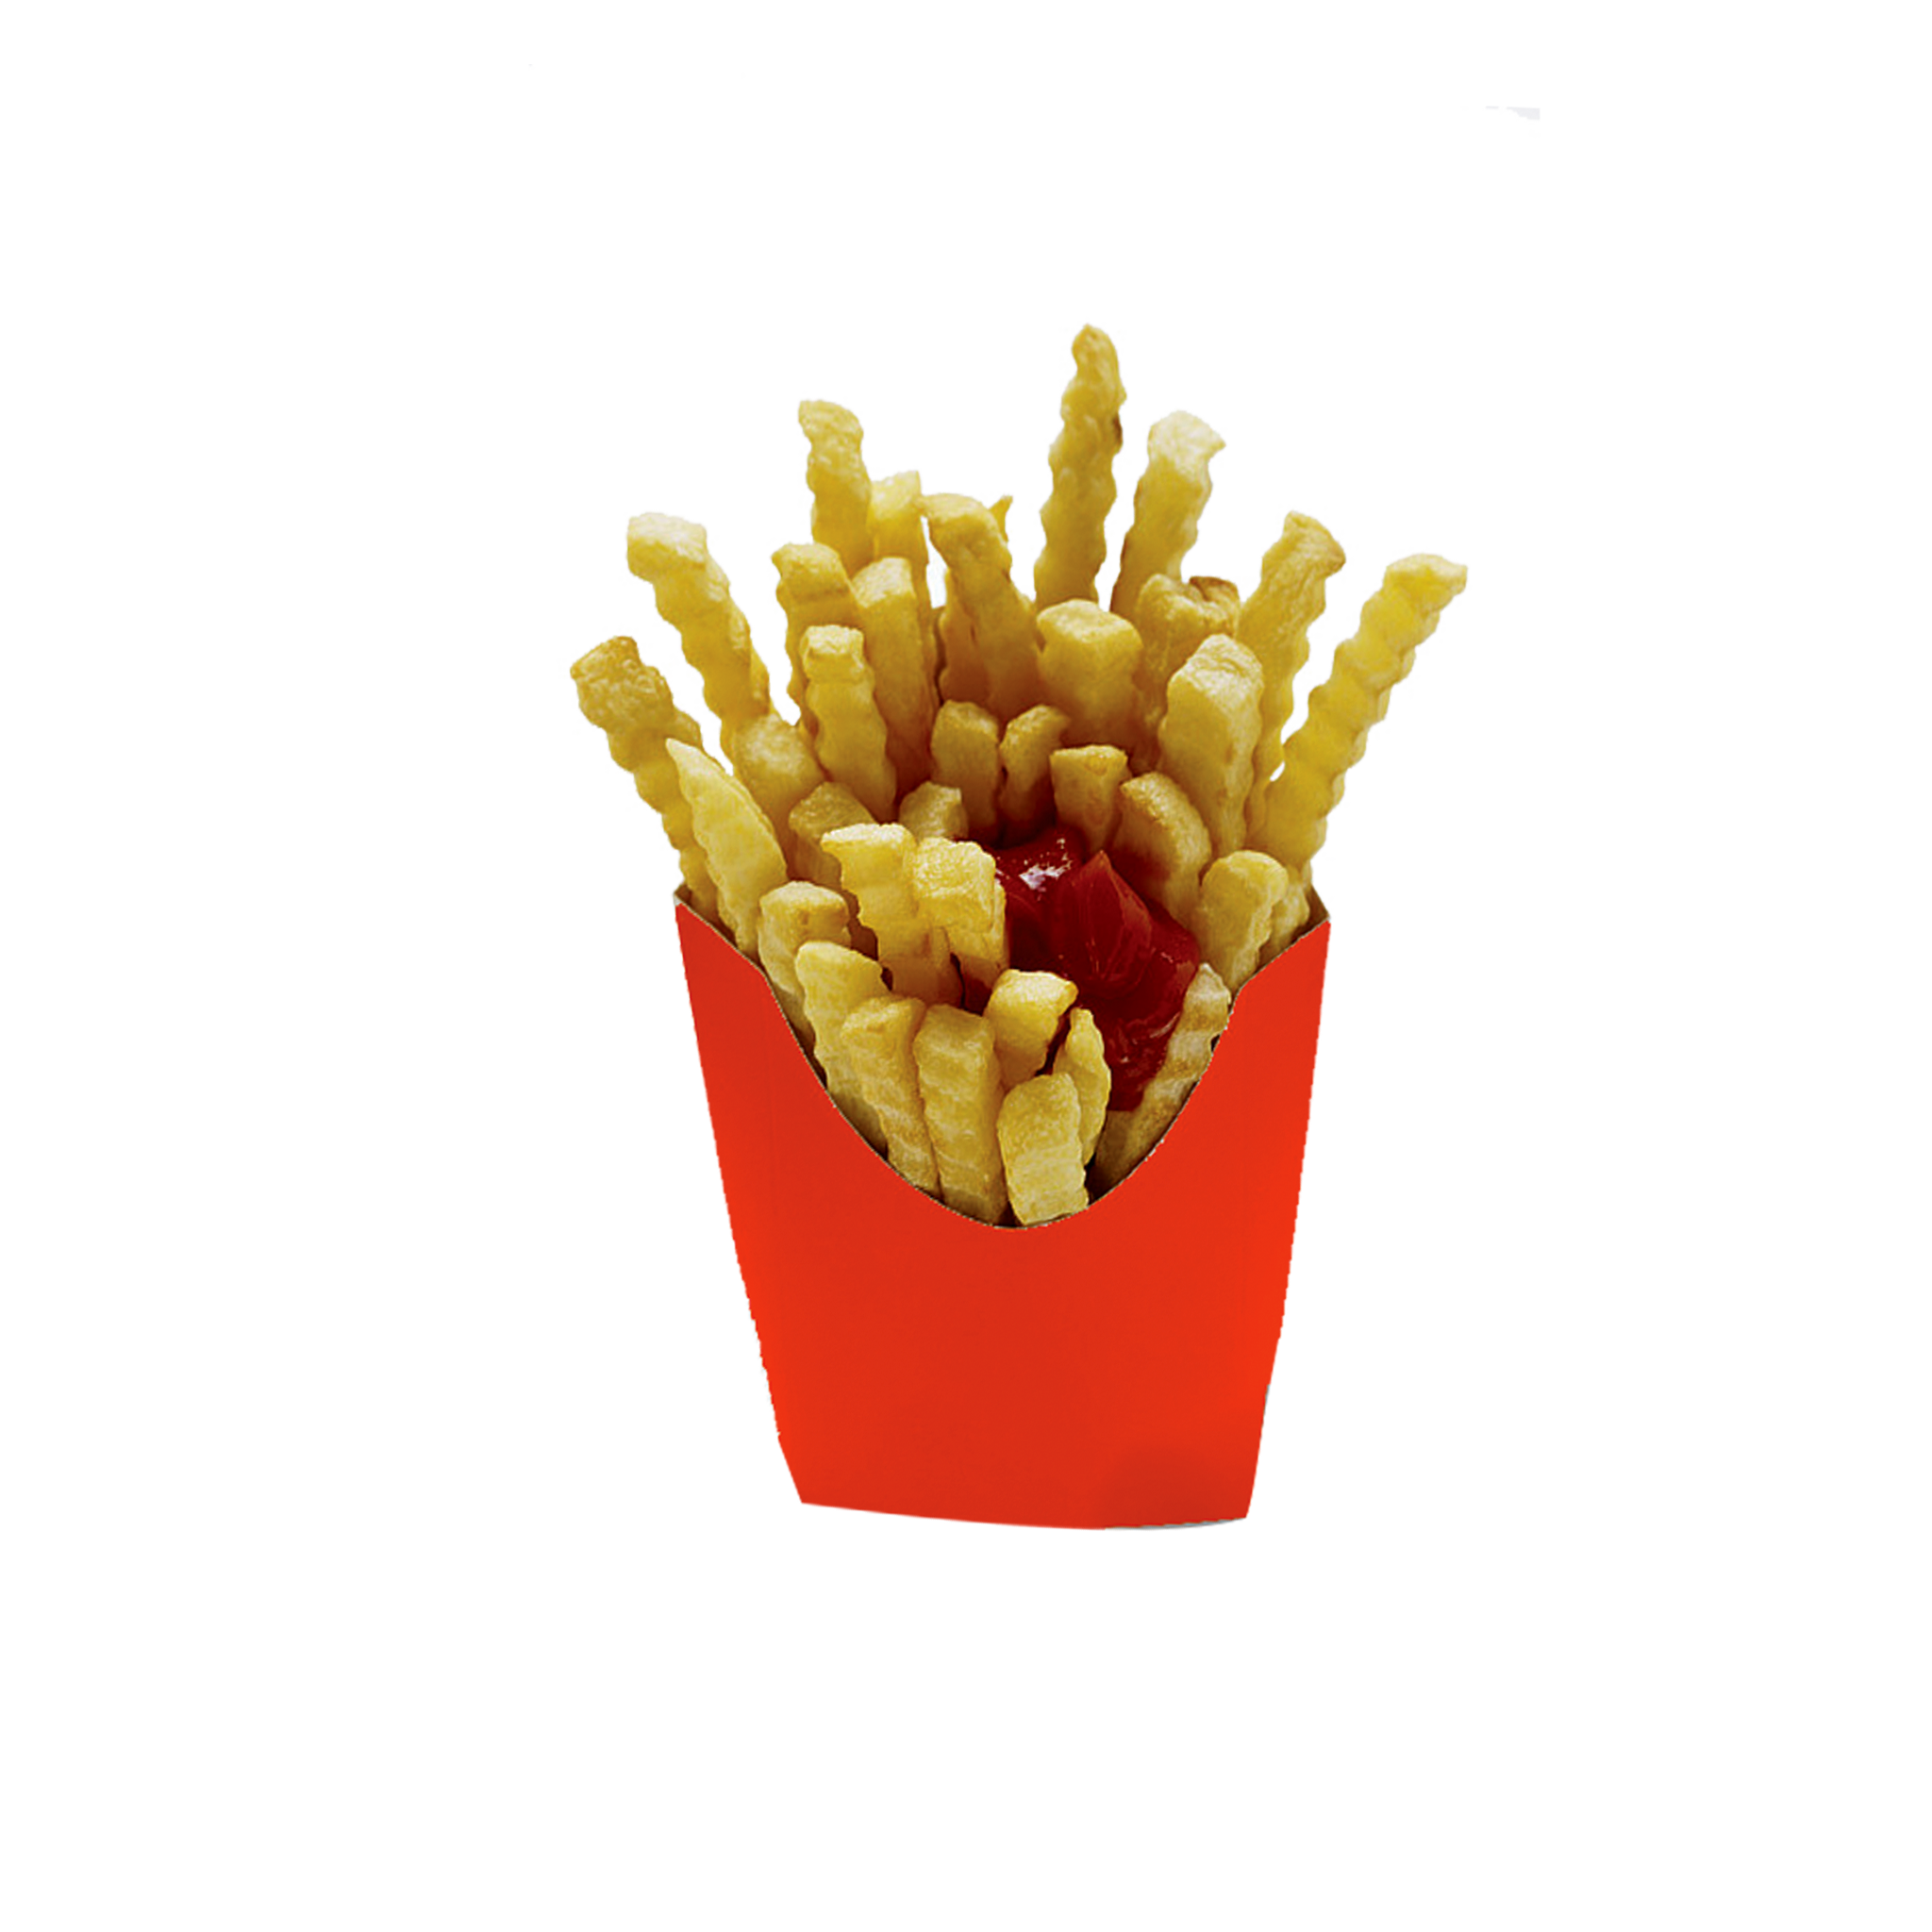 Crunchy Fries PNG Photos